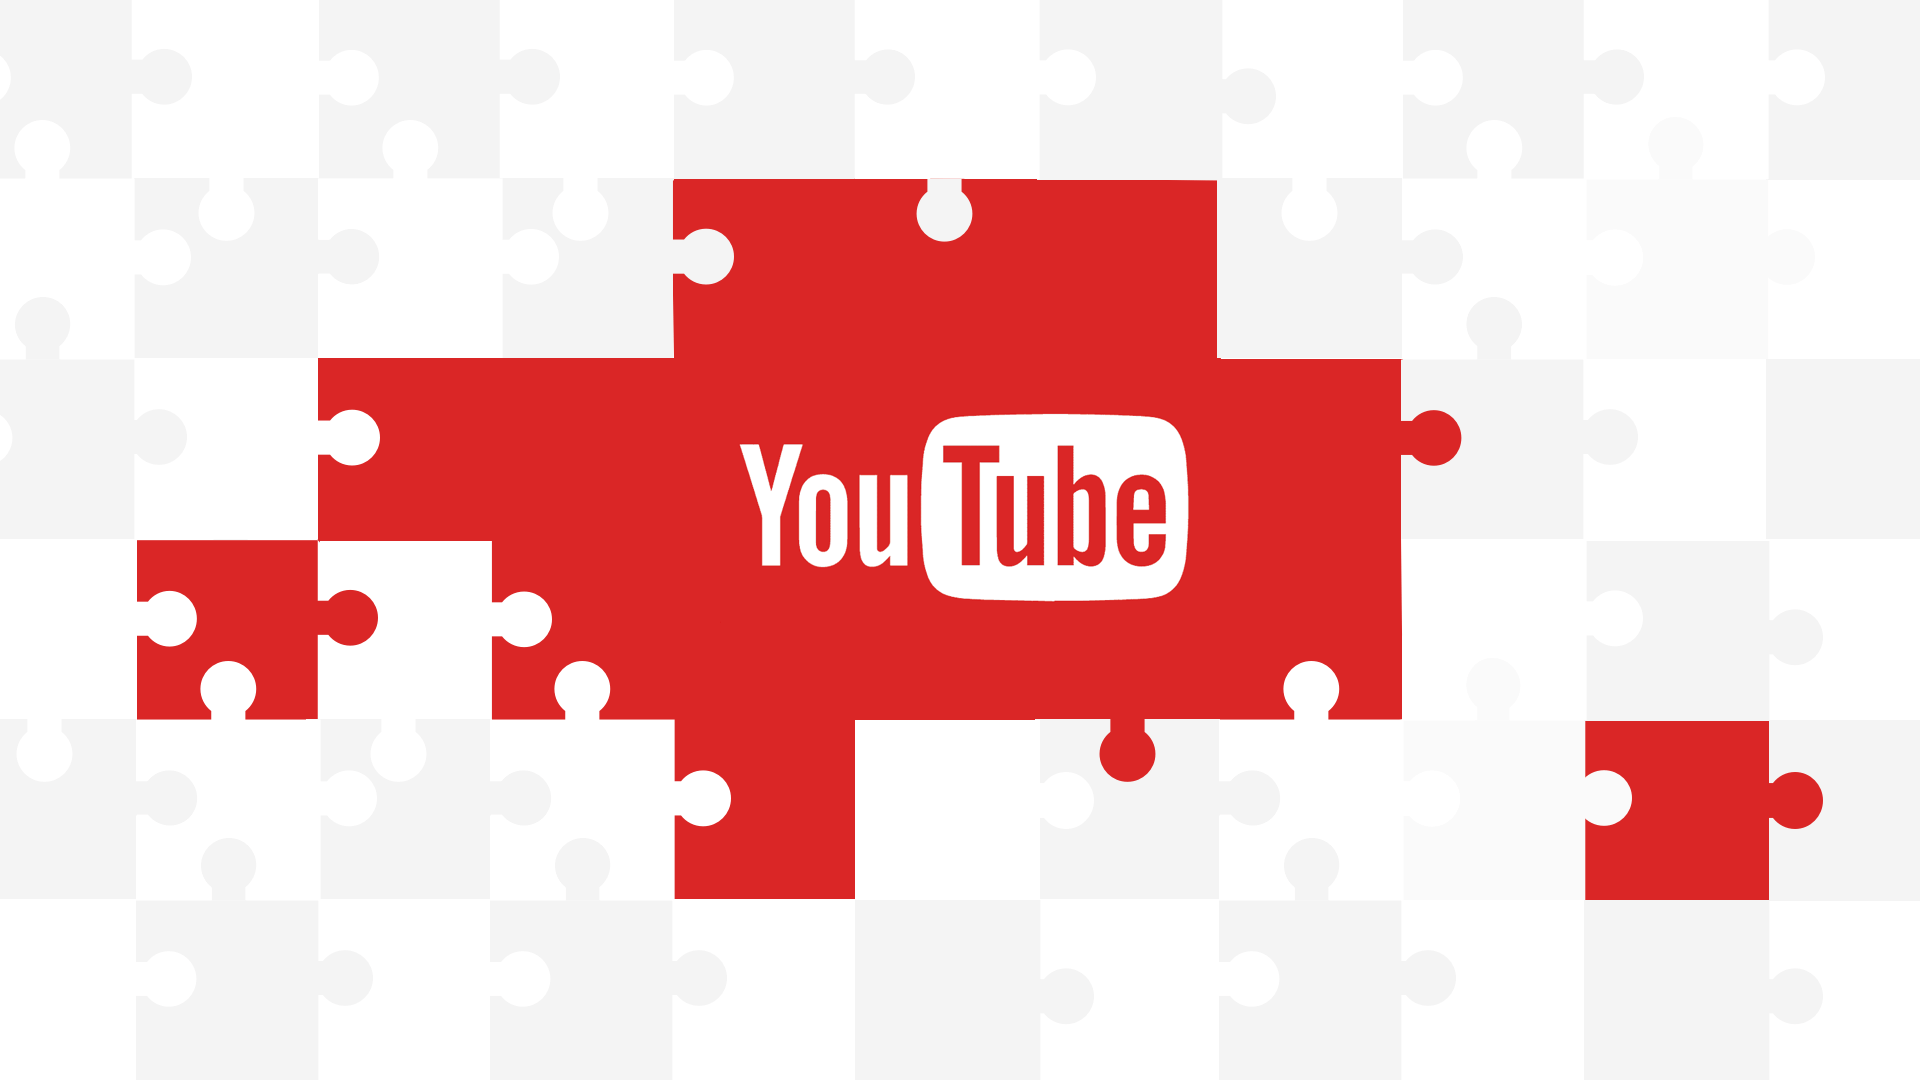 باز کردن هیجان: معرفی کانال یوتیوب ما!